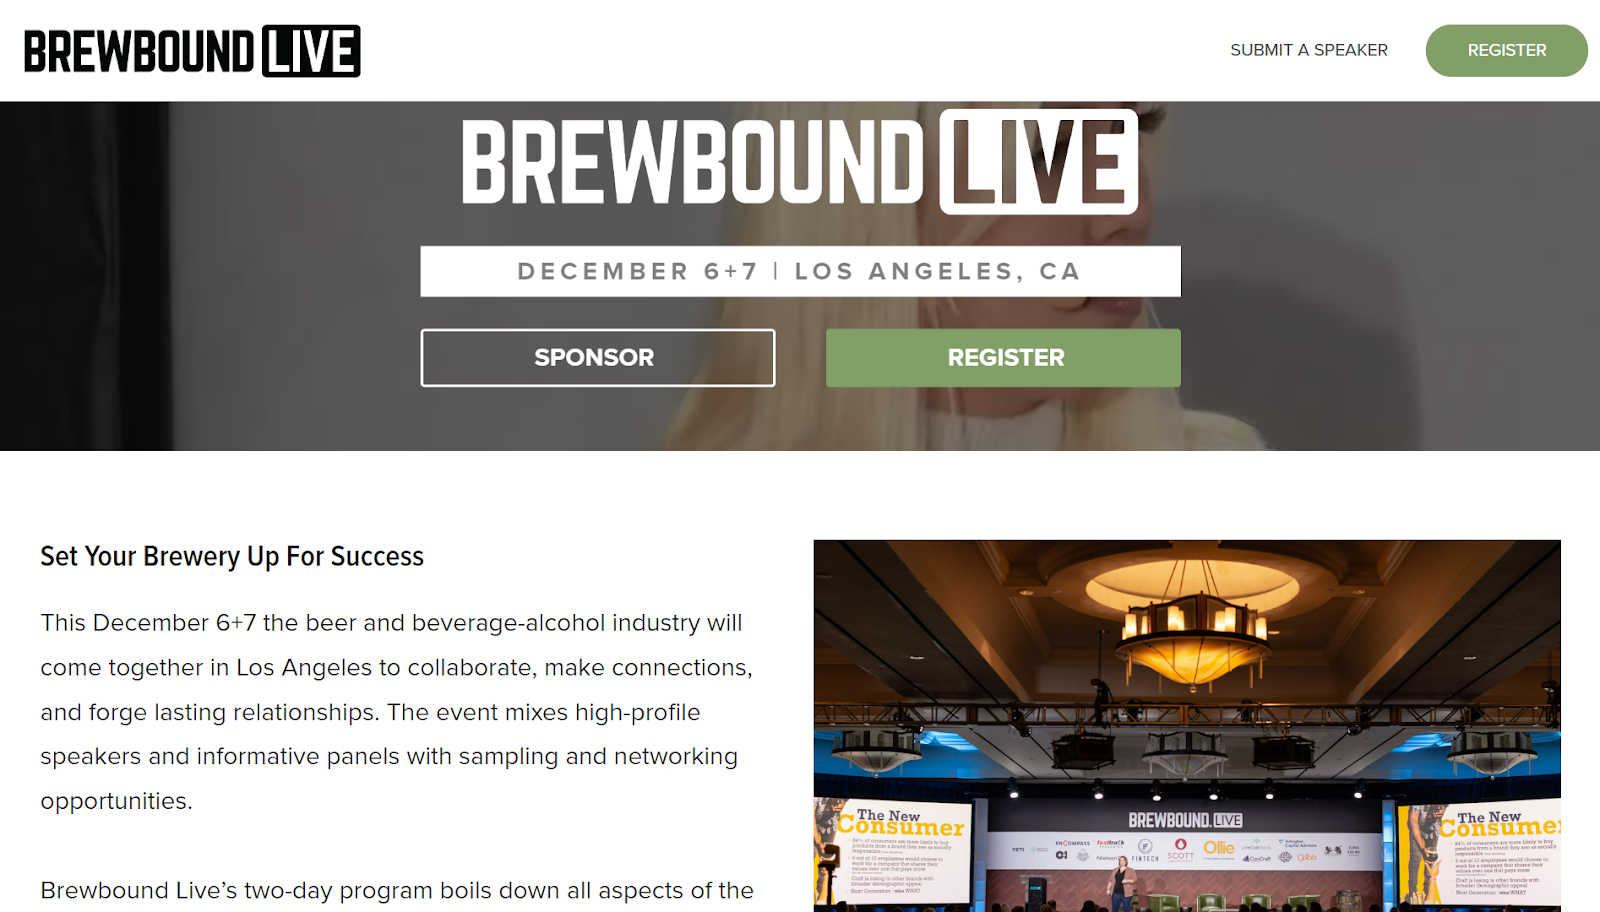 Brewbound Live event website promotional banner